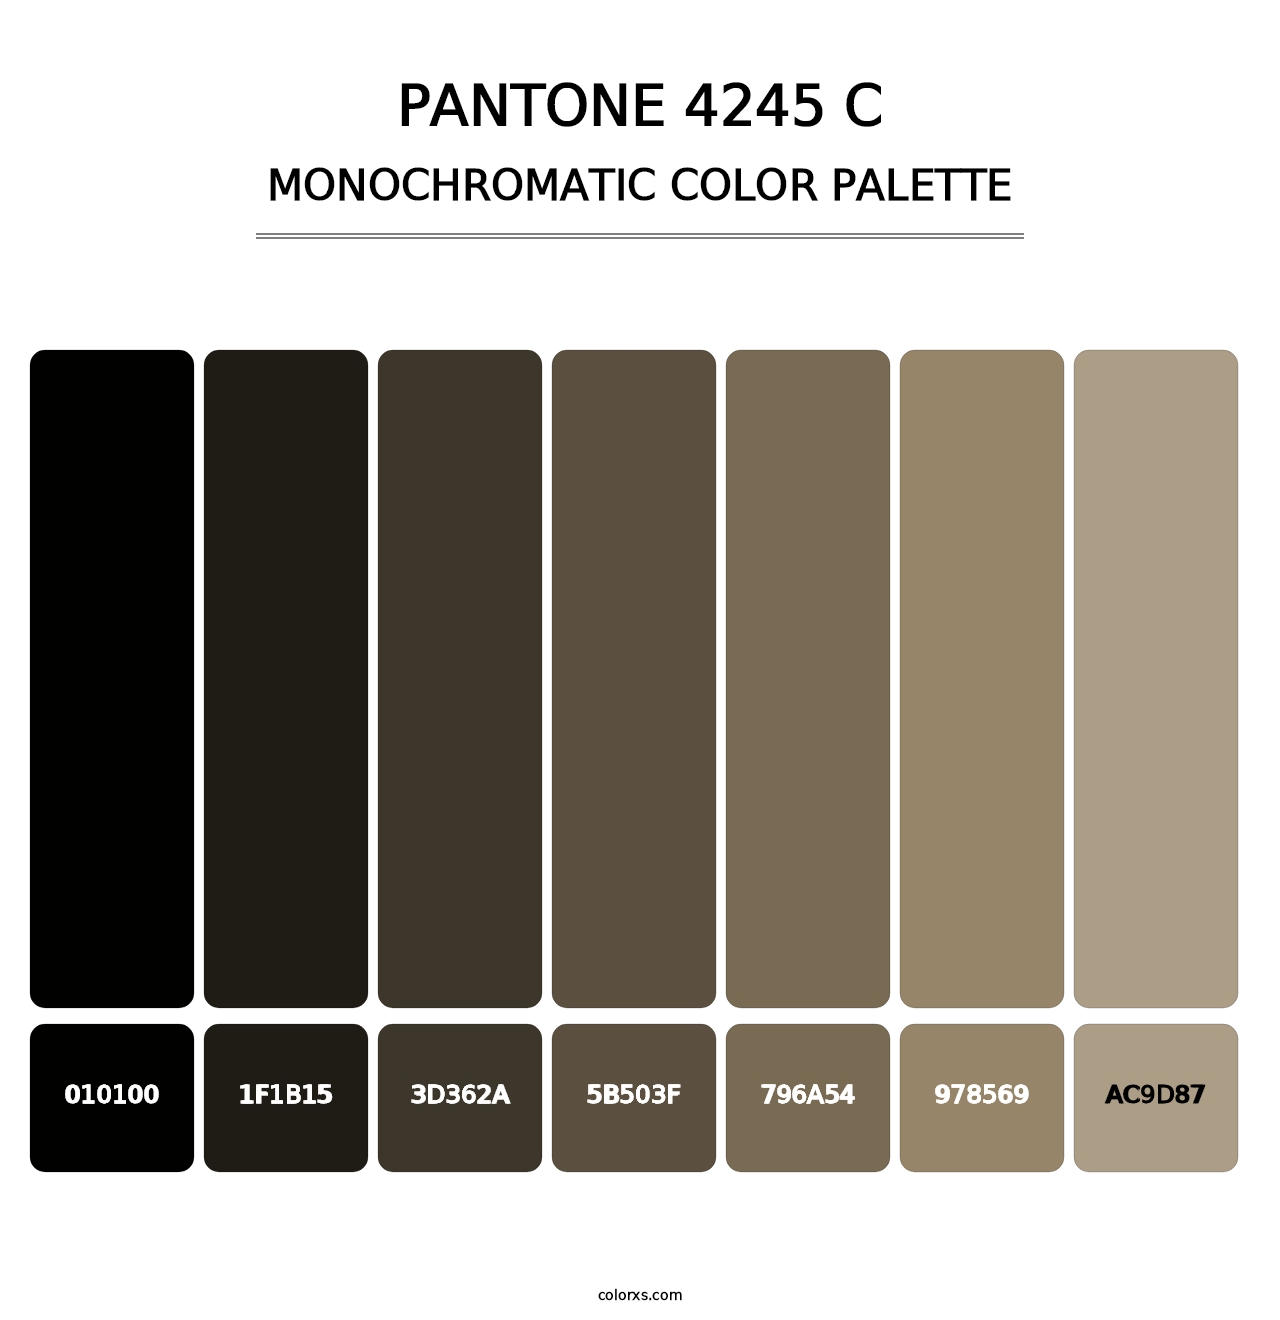 PANTONE 4245 C - Monochromatic Color Palette